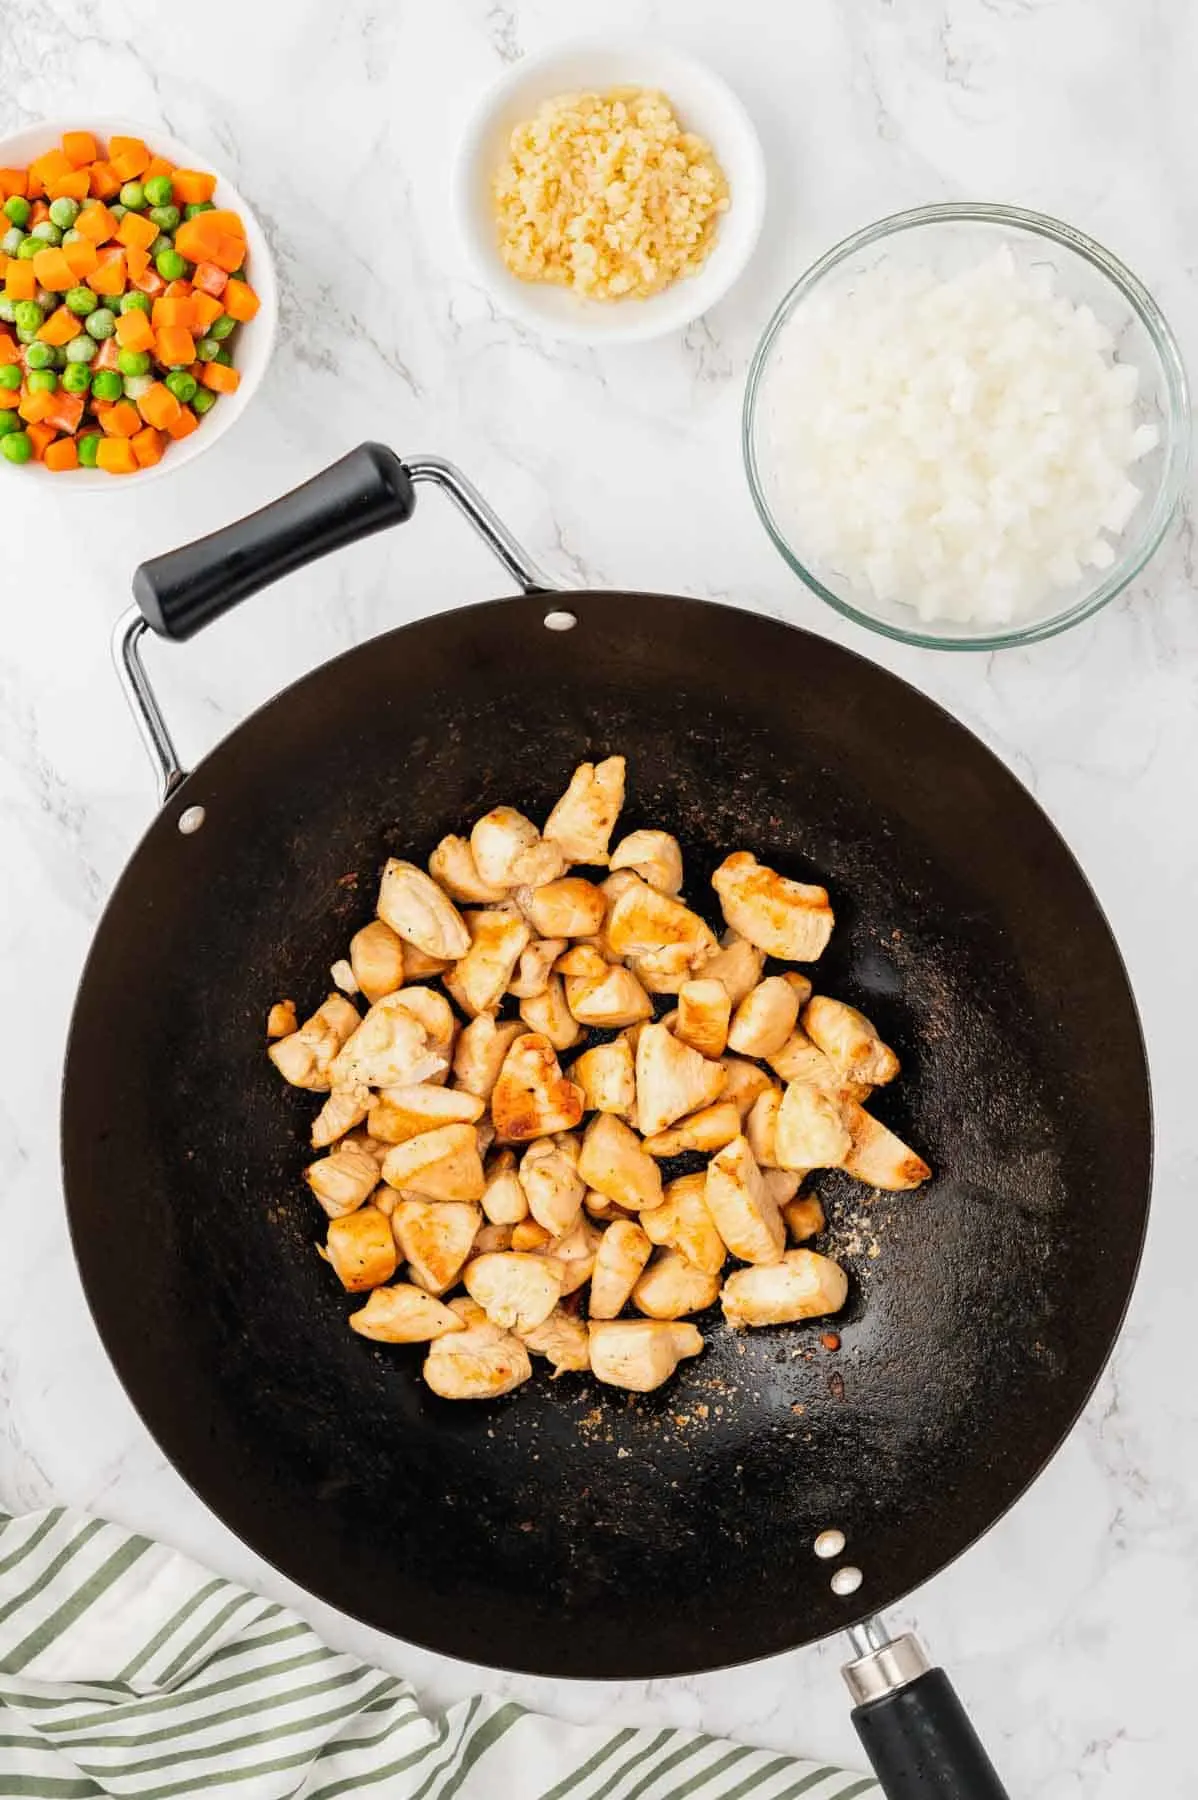 golden brown chicken pieces in a wok